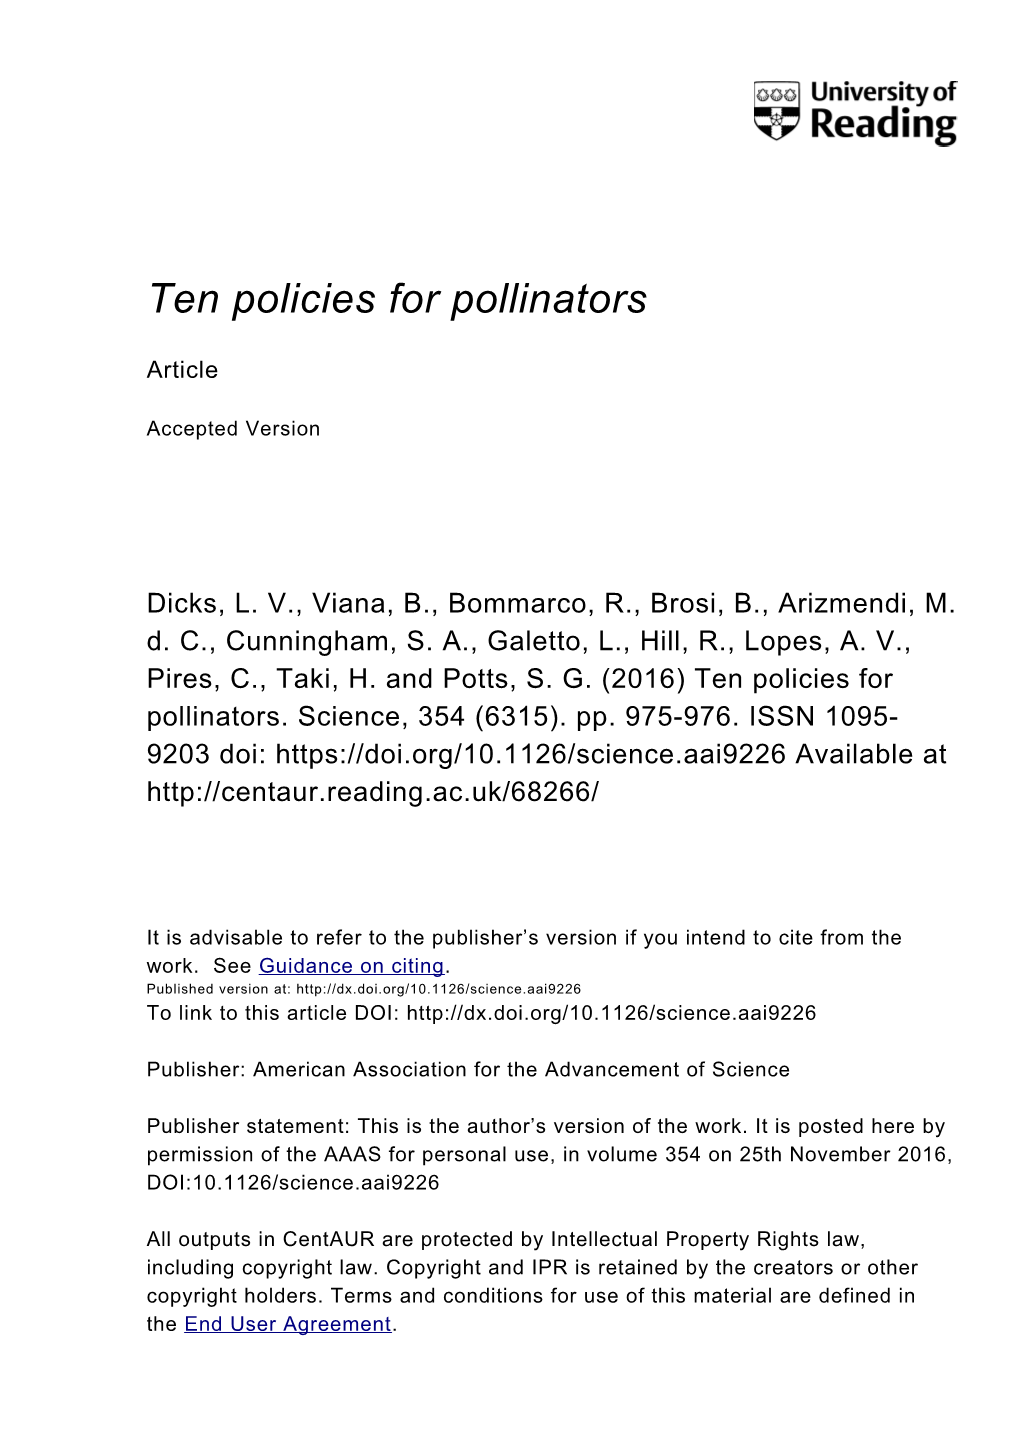 Ten Policies for Pollinators